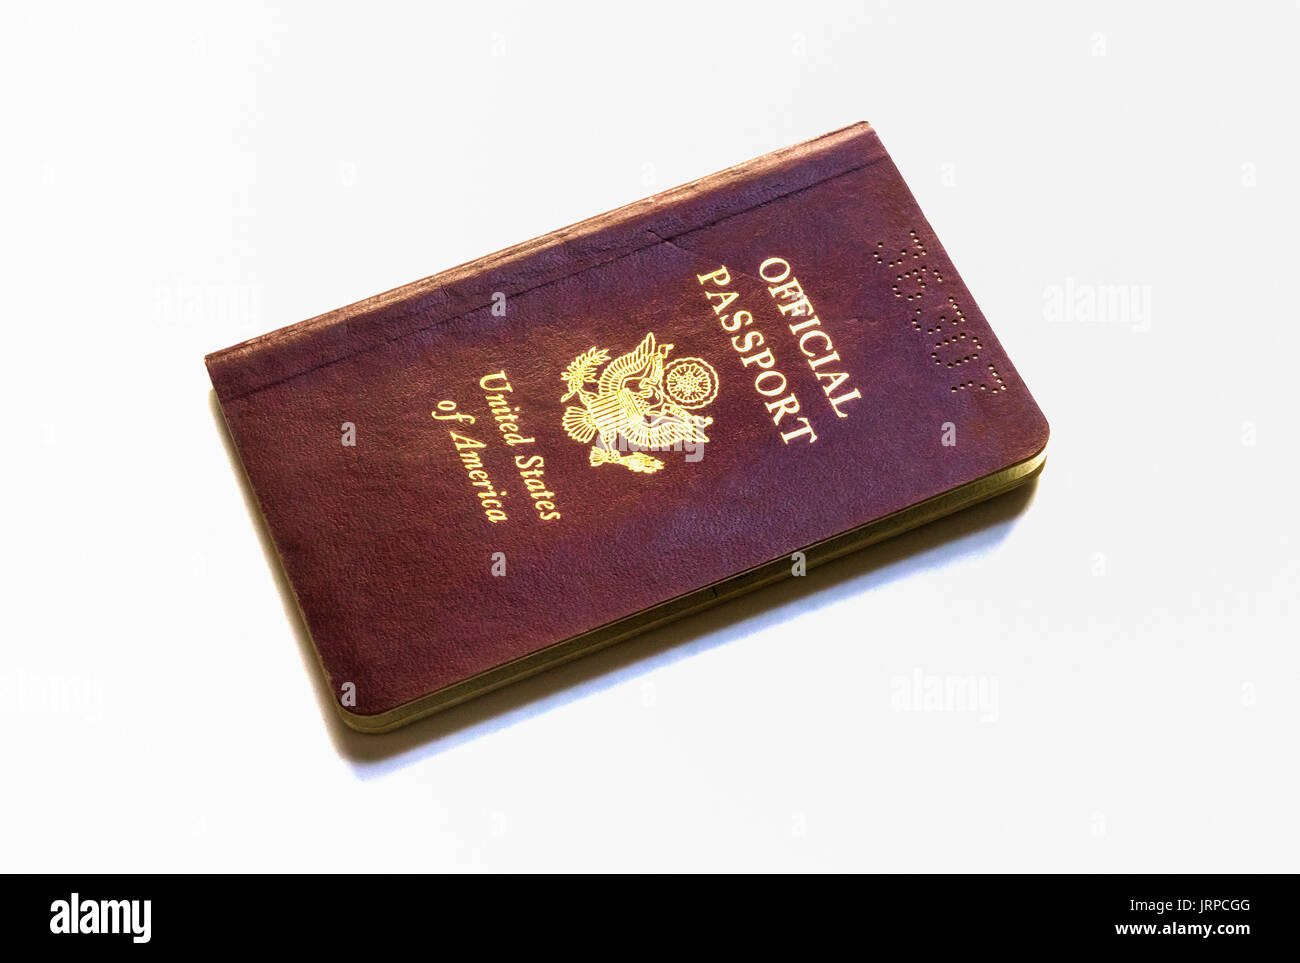 Un passeport officiel américain brun rougeâtre est montré sur fond blanc Banque D'Images